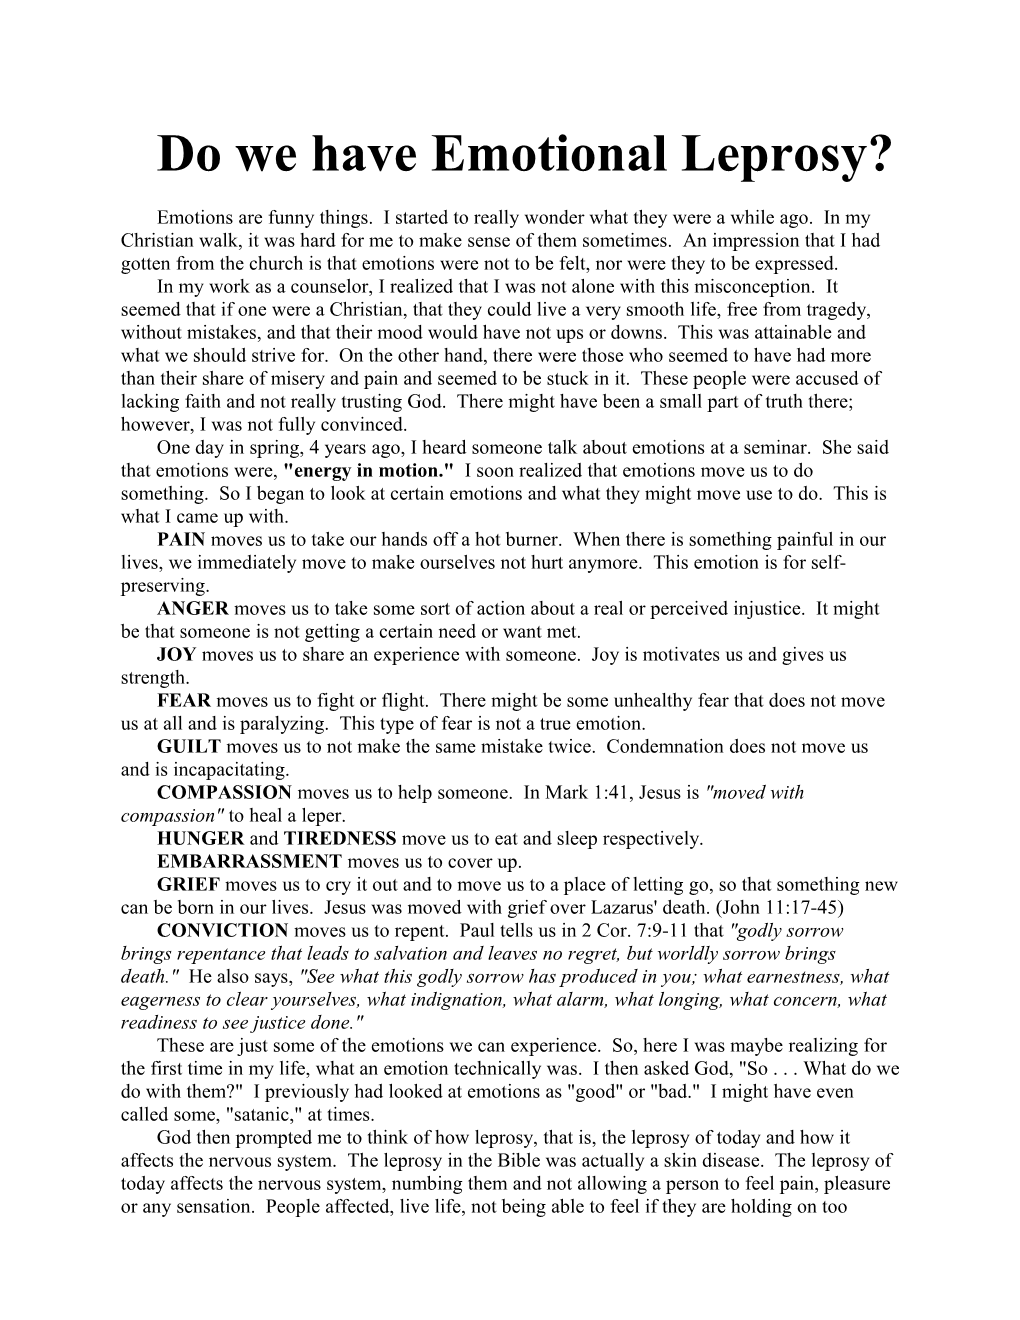 Do We Have Emotional Leprosy